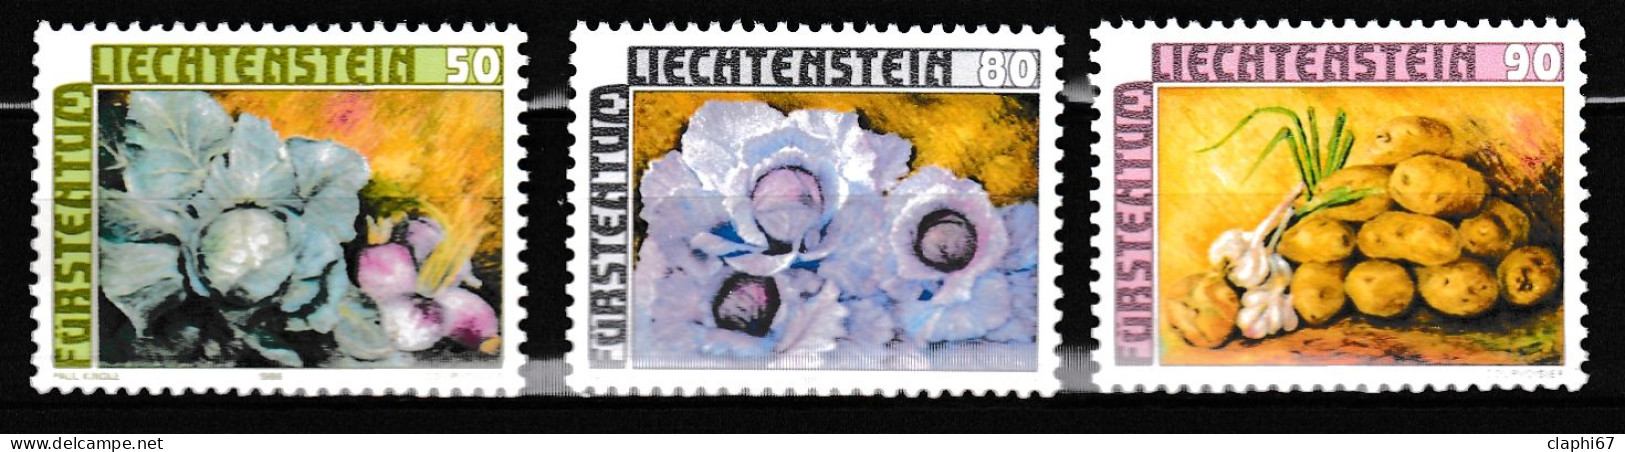 Liechtenstein Série Légumes De 1986 (y845-847) Neufs ** MNH (voir Scan) - Légumes